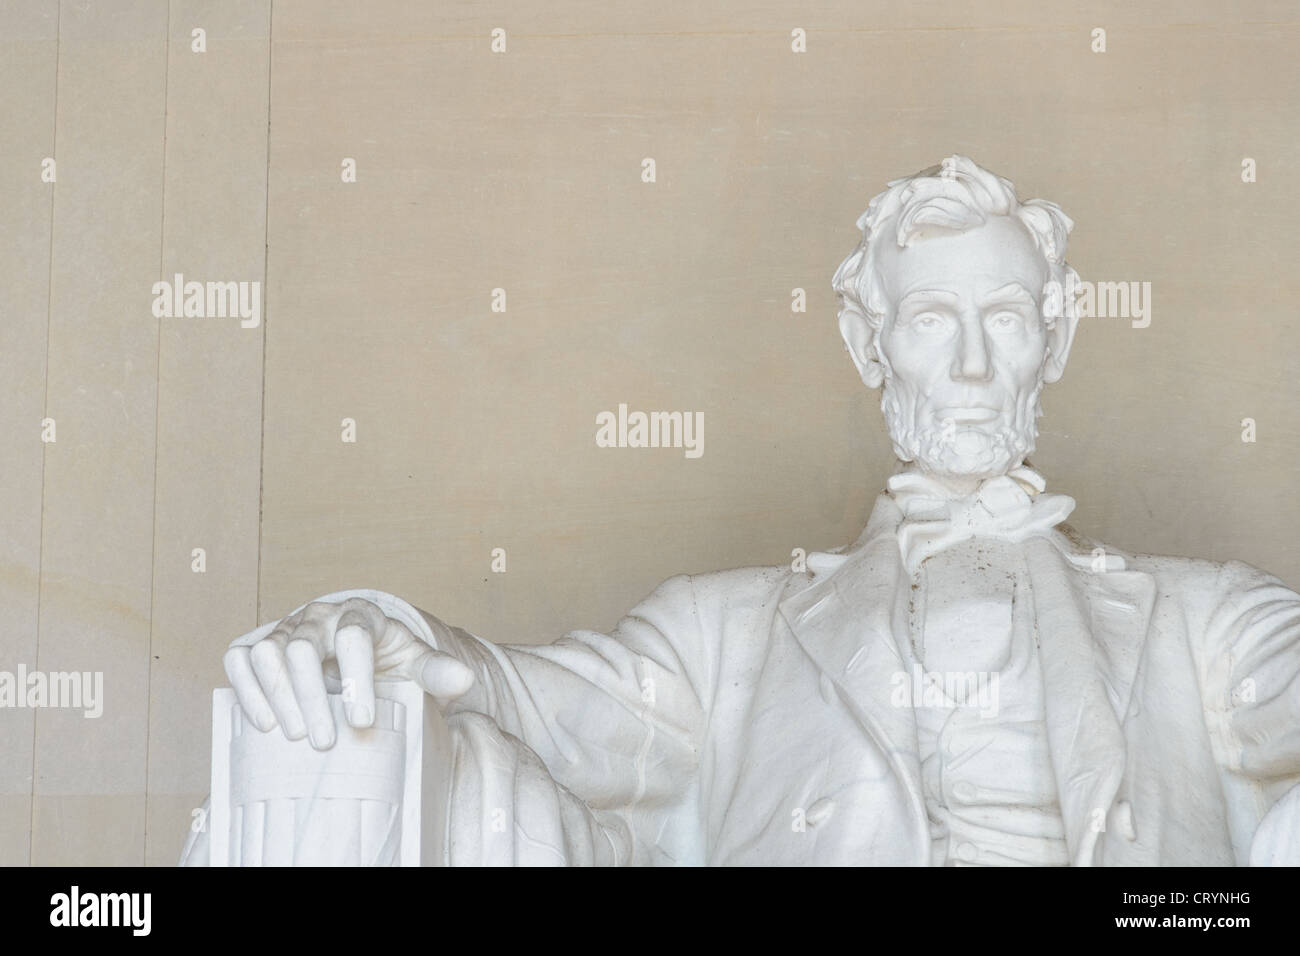 WASHINGTON DC, Stati Uniti d'America - Abraham Lincoln statua di Lincoln Memorial paesaggio con Copyspace a sinistra. Dettaglio della statua di un insediato il Presidente Abraham Lincoln guardando fuori dal Lincoln Memorial verso il Monumento di Washington e gli Stati Uniti Capitol. Con copyspace in alto a sinistra del telaio. Foto Stock